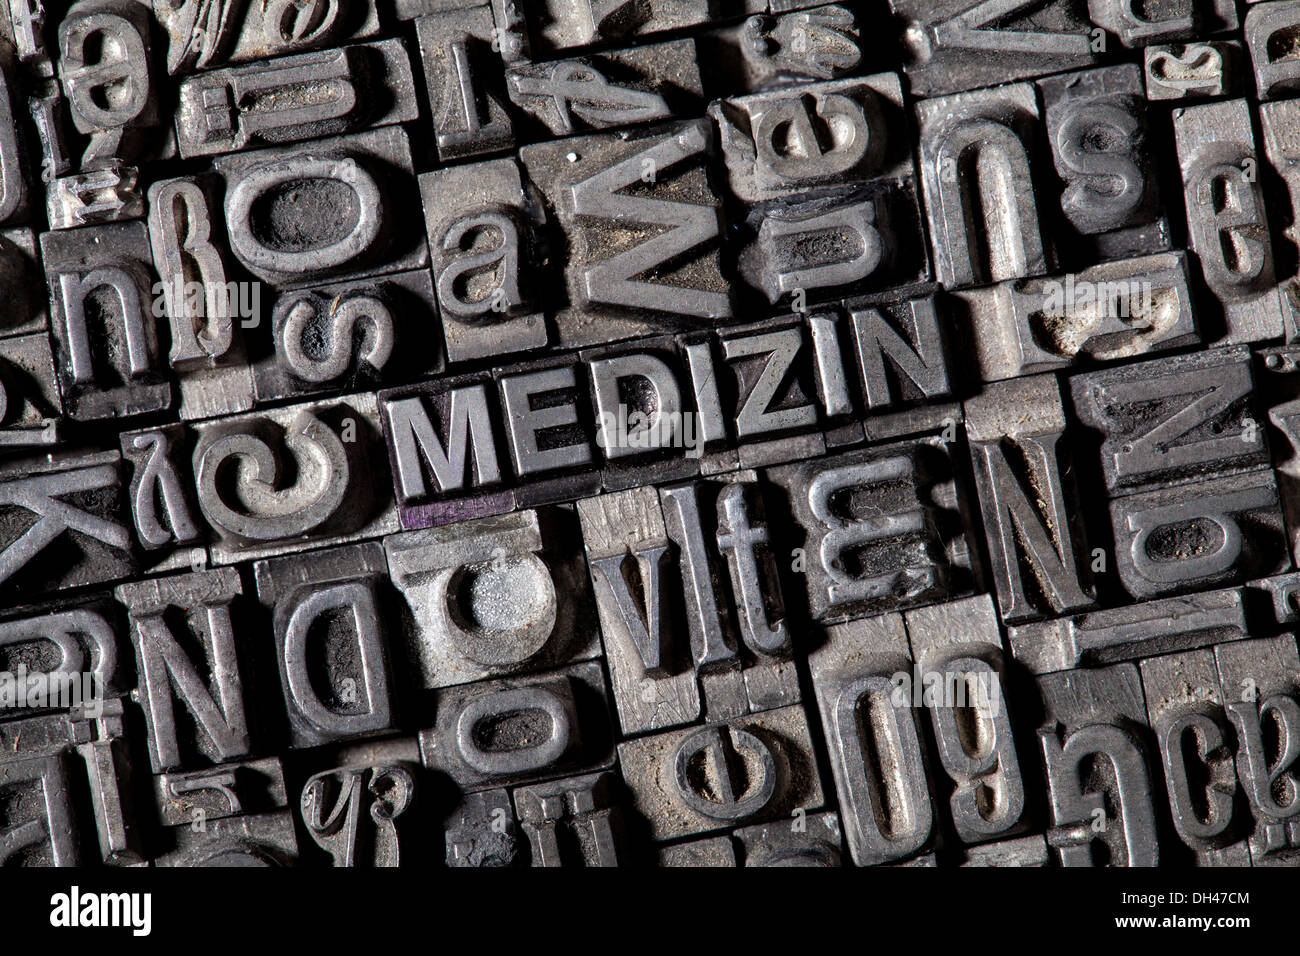 Vecchio portano lettere che compongono la parola 'MEDIZIN', Tedesco per 'medicine' Foto Stock